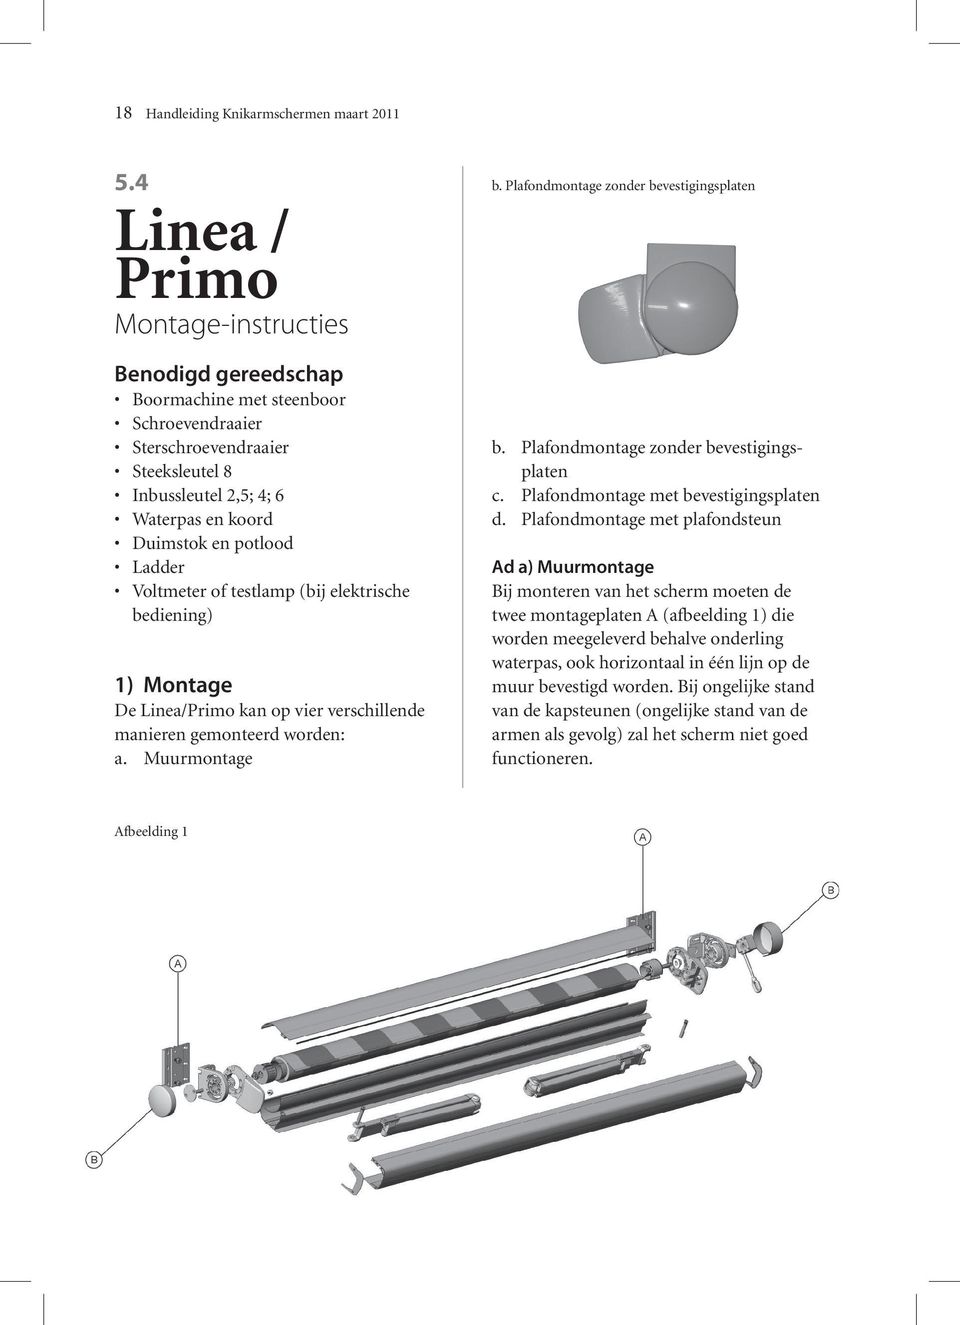 Ladder Voltmeter of testlamp (bij elektrische bediening) 1) Montage De Linea/Primo kan op vier verschillende manieren gemonteerd worden: a. Muurmontage b. Plafondmontage zonder bevestigingsplaten b.